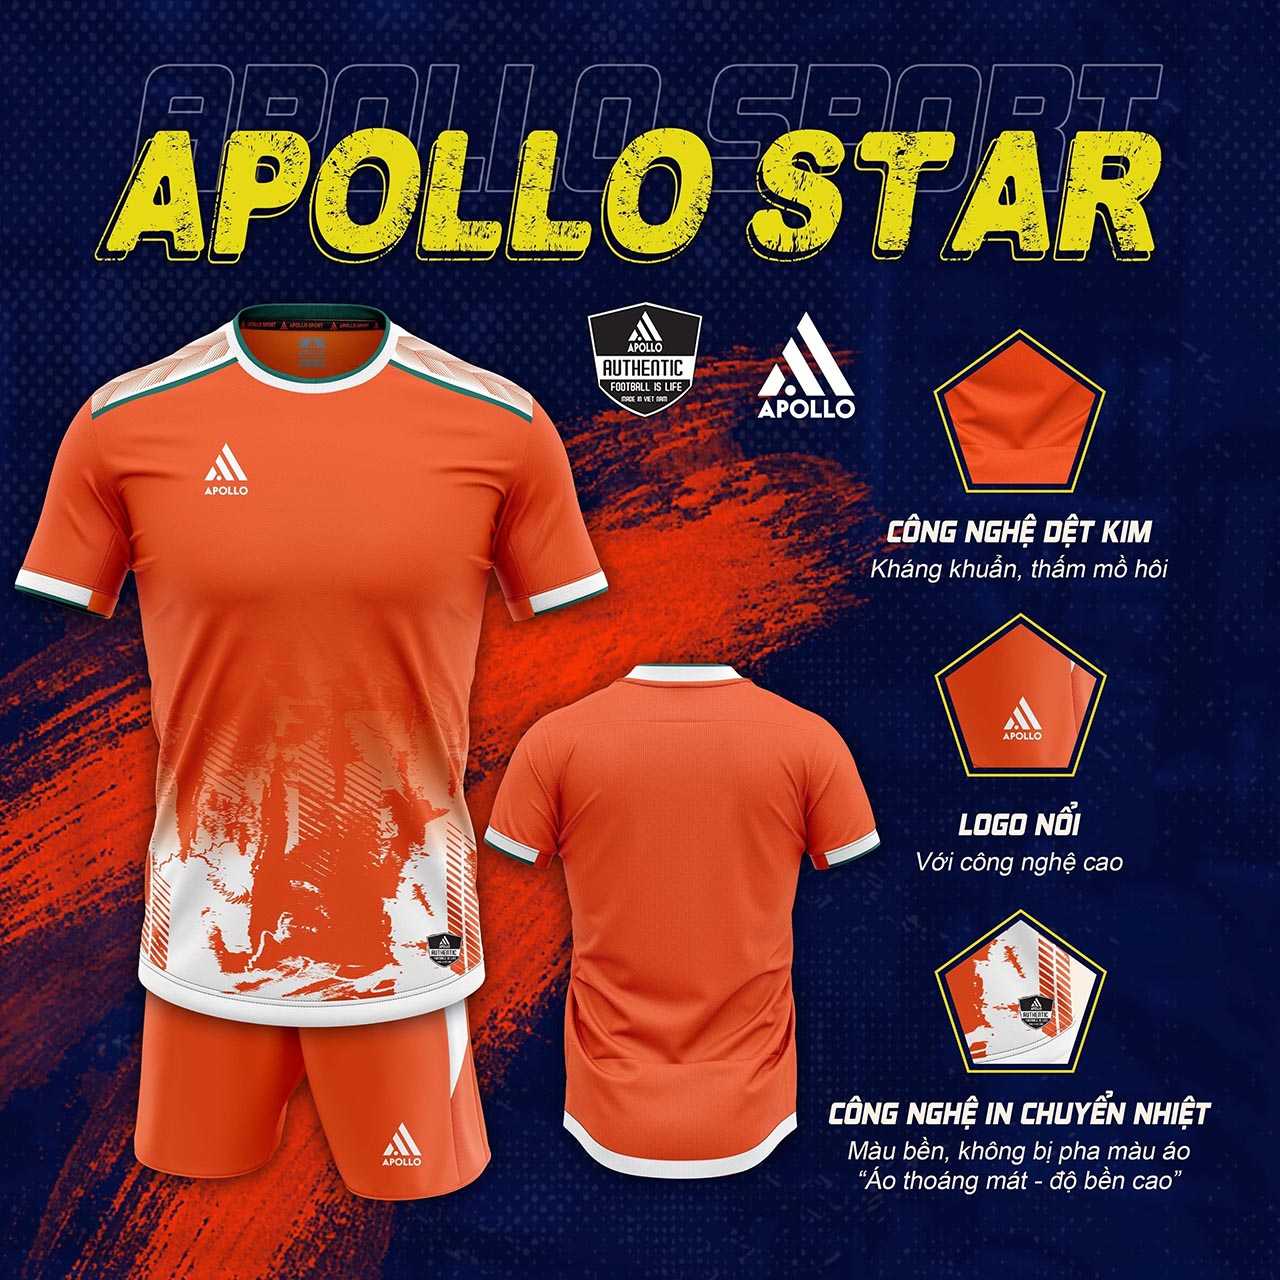 Bộ quần áo thể thao bóng đá chính hãng apollo star nhiều màu đỏ